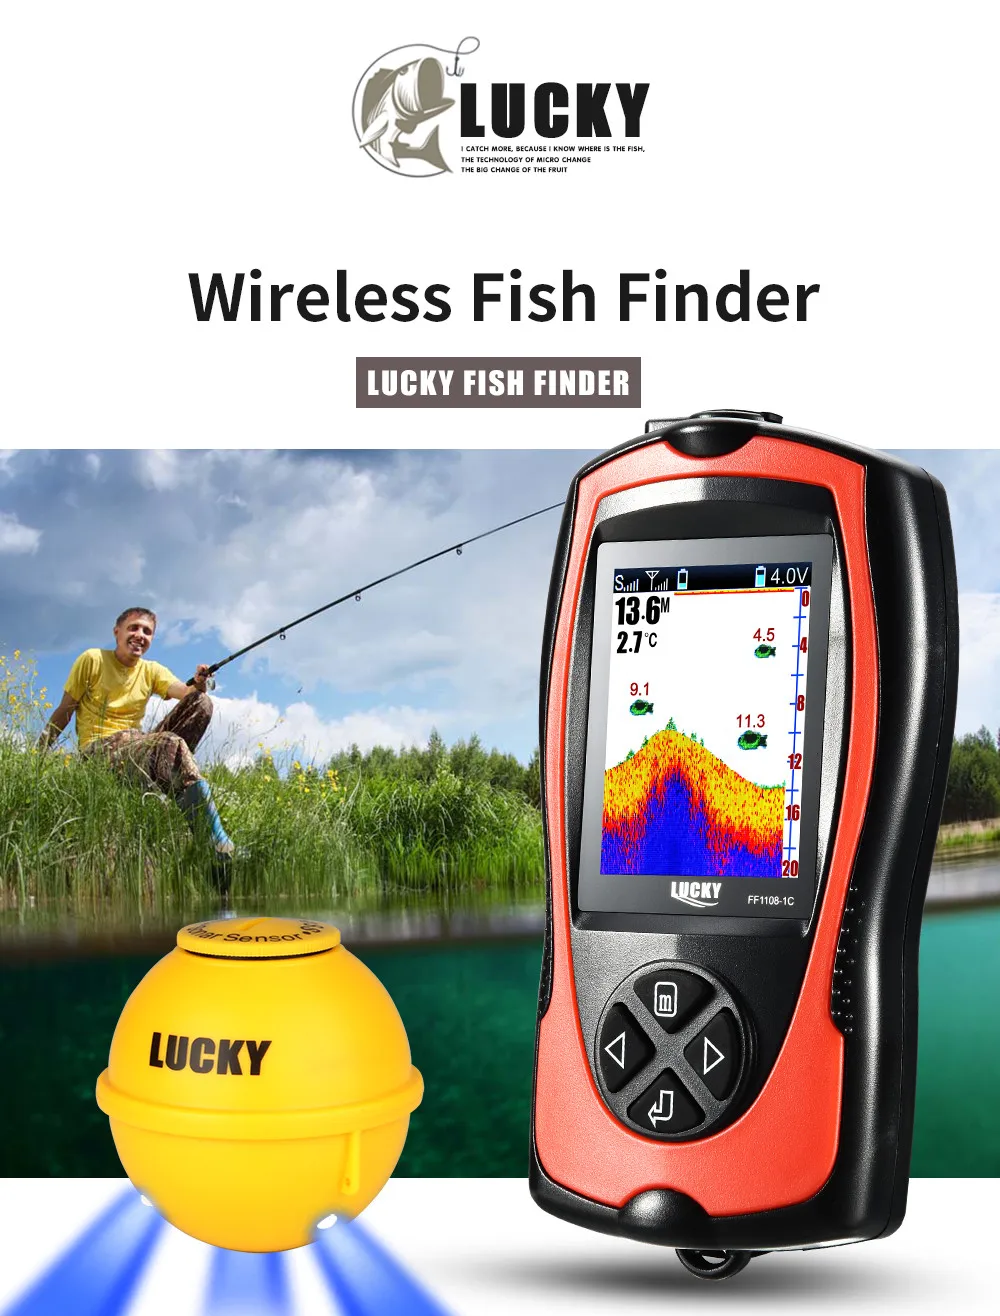 Findfish эхолот lucky sonar рыболовная сигнализация электронный для определения глубины ловли рыбы звук беспроводной эхолот камера